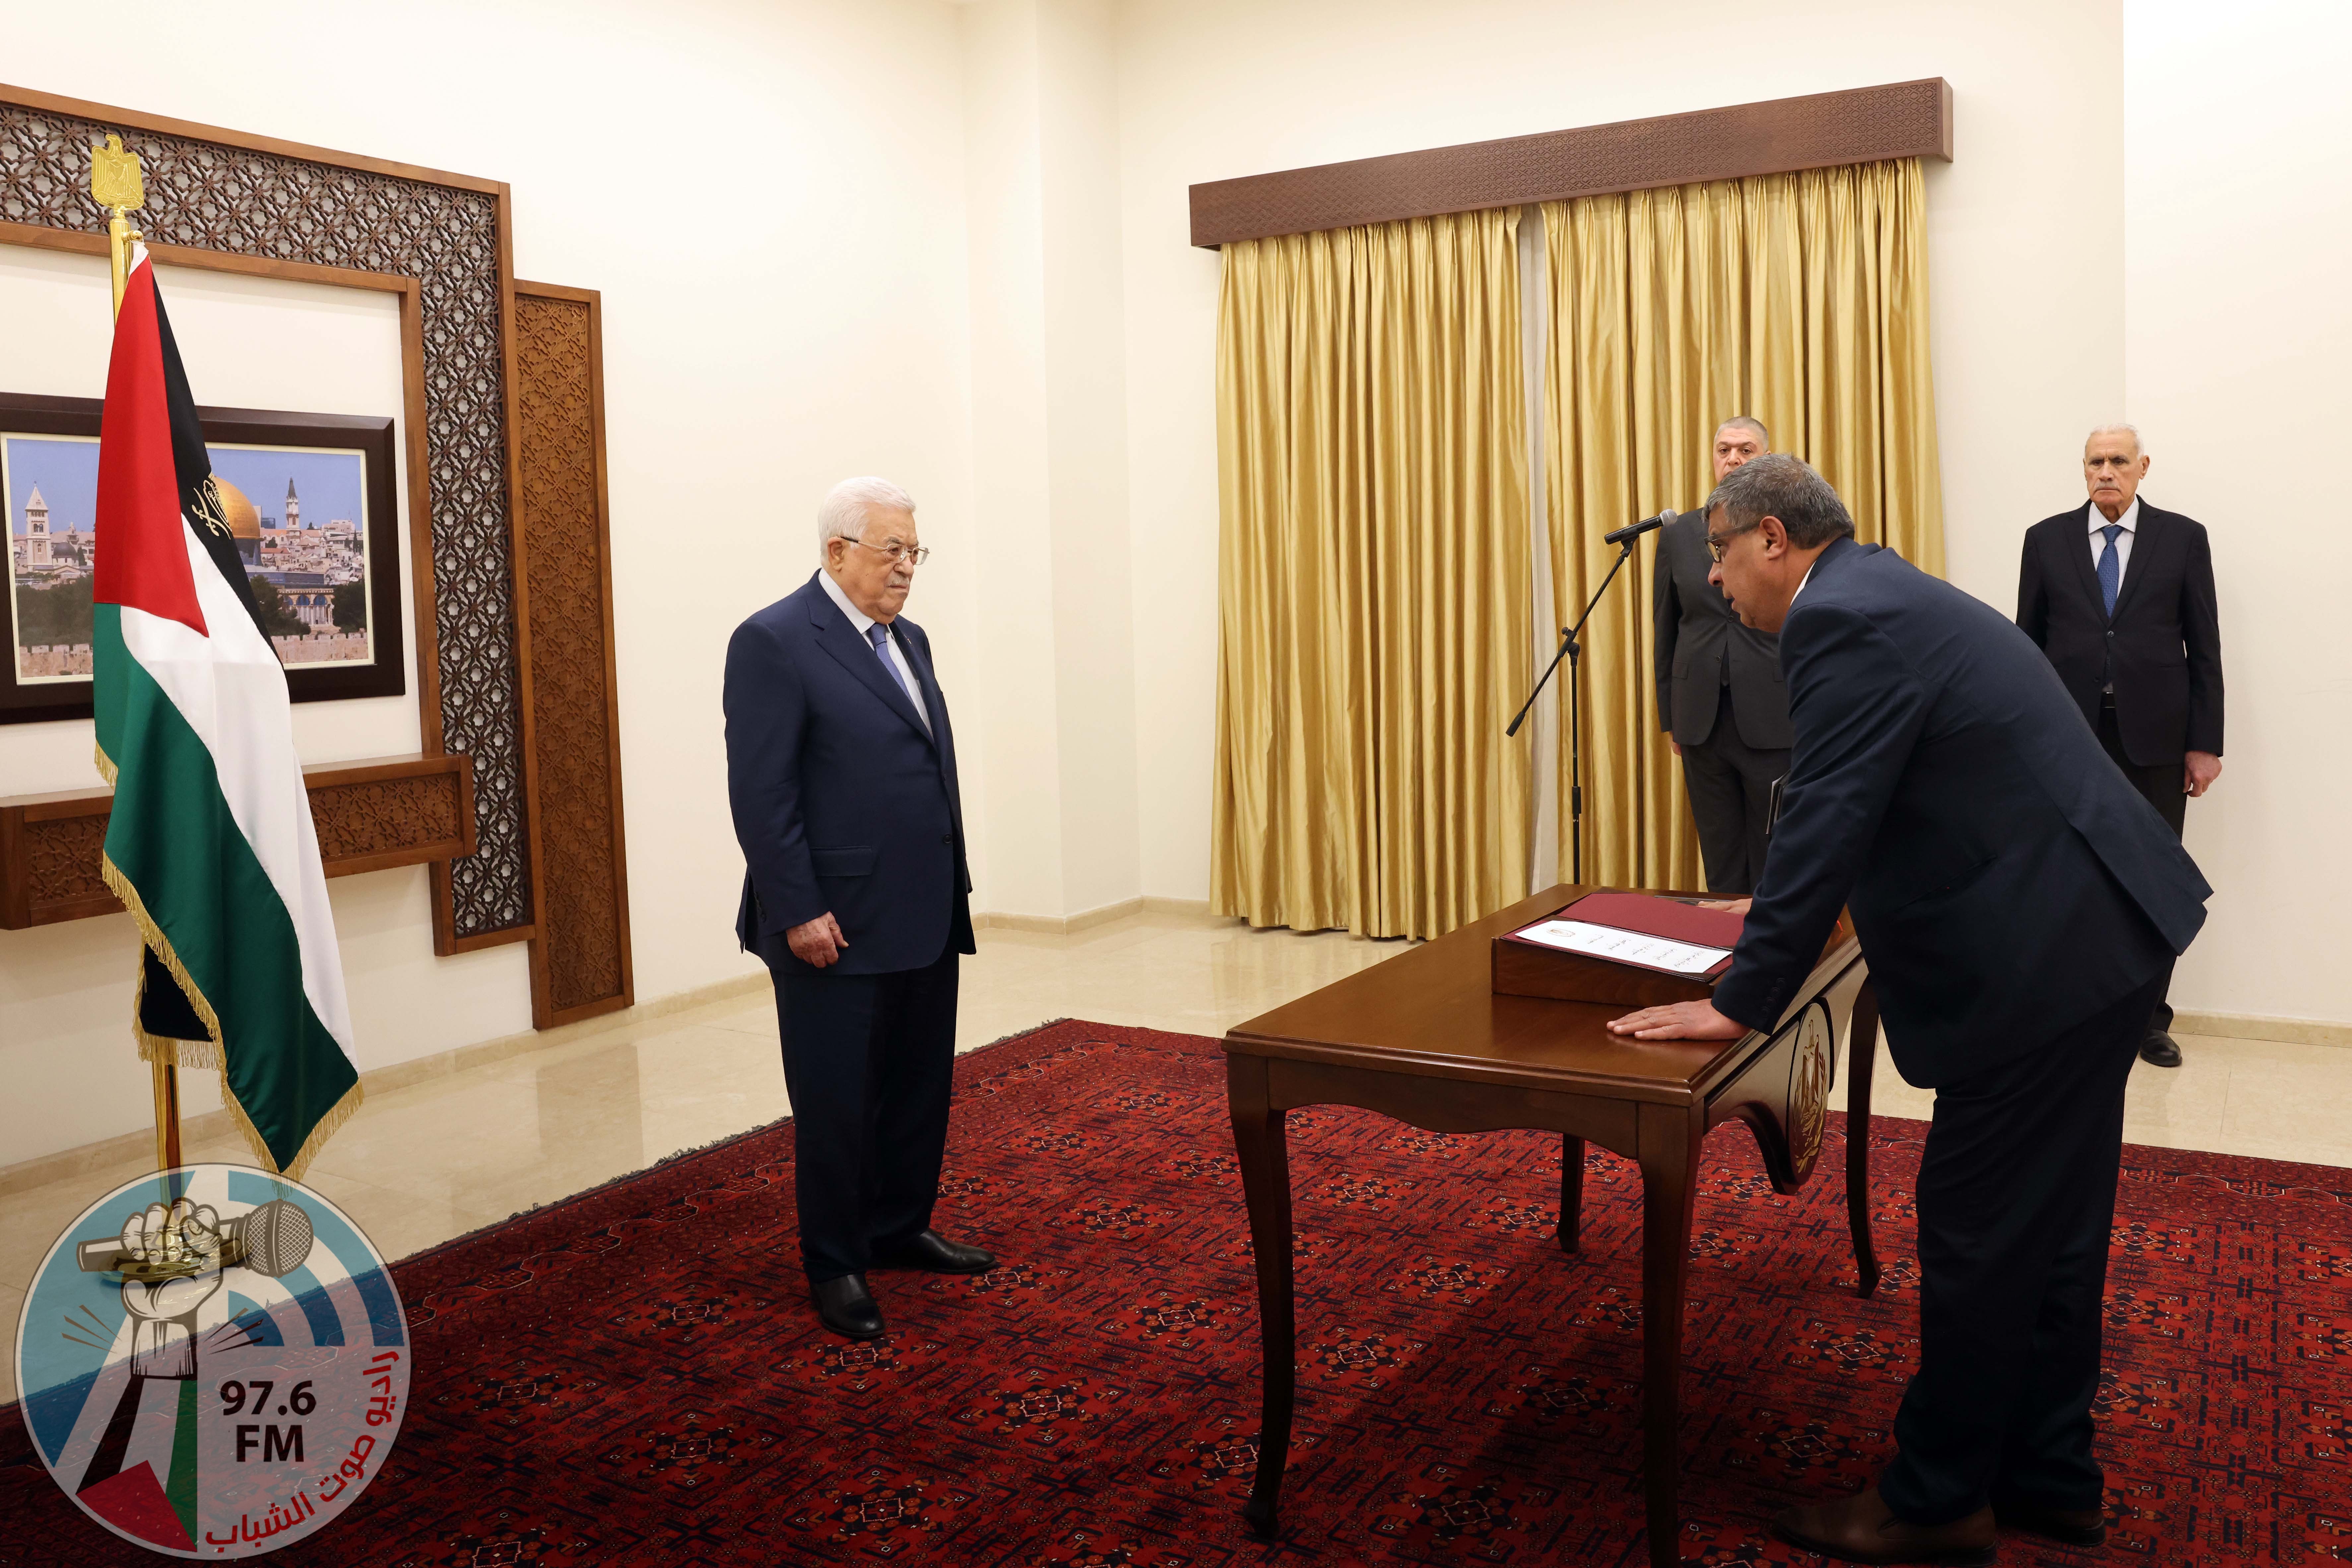 الرئيس يصدر مرسوما بتعيين أحمد محمود صالح محافظا لطوباس والأغوار الشمالية